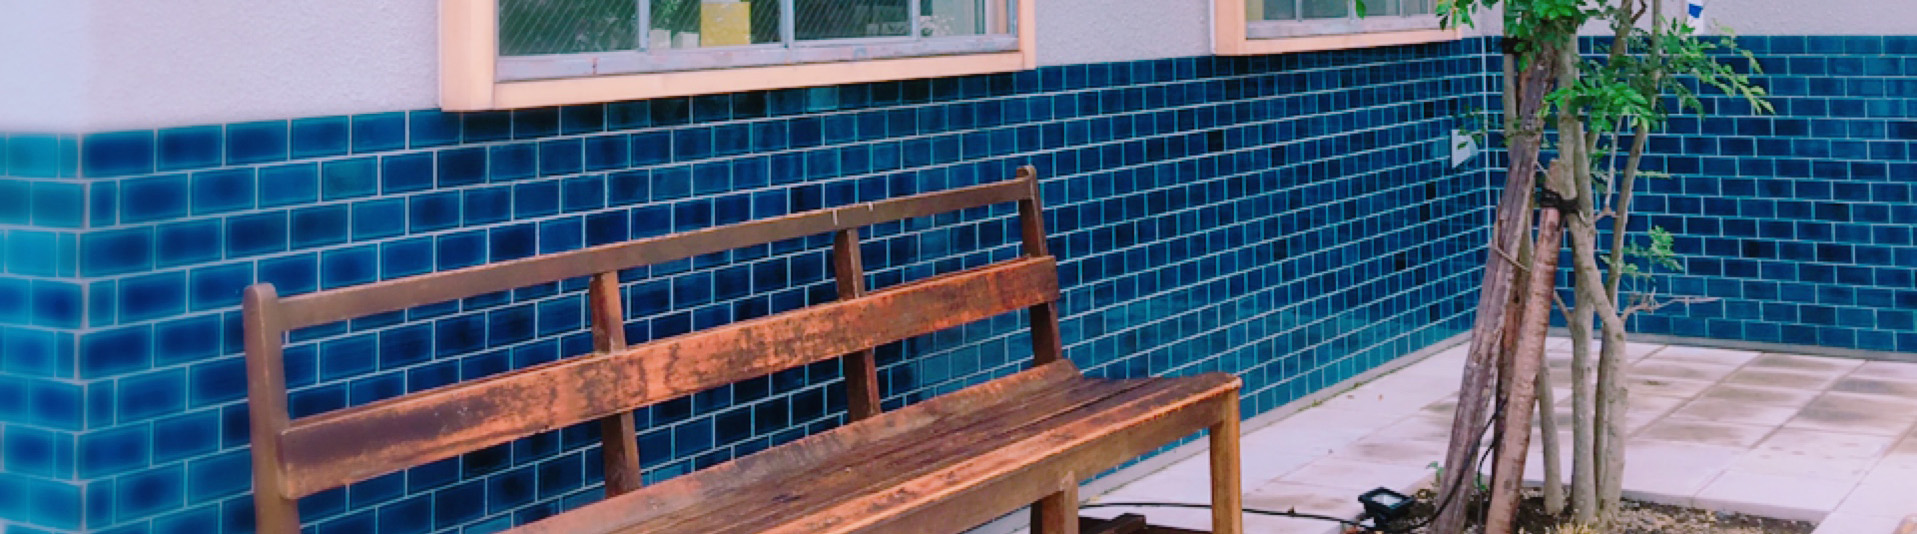 クヌルプ店舗外観青いタイルの写真